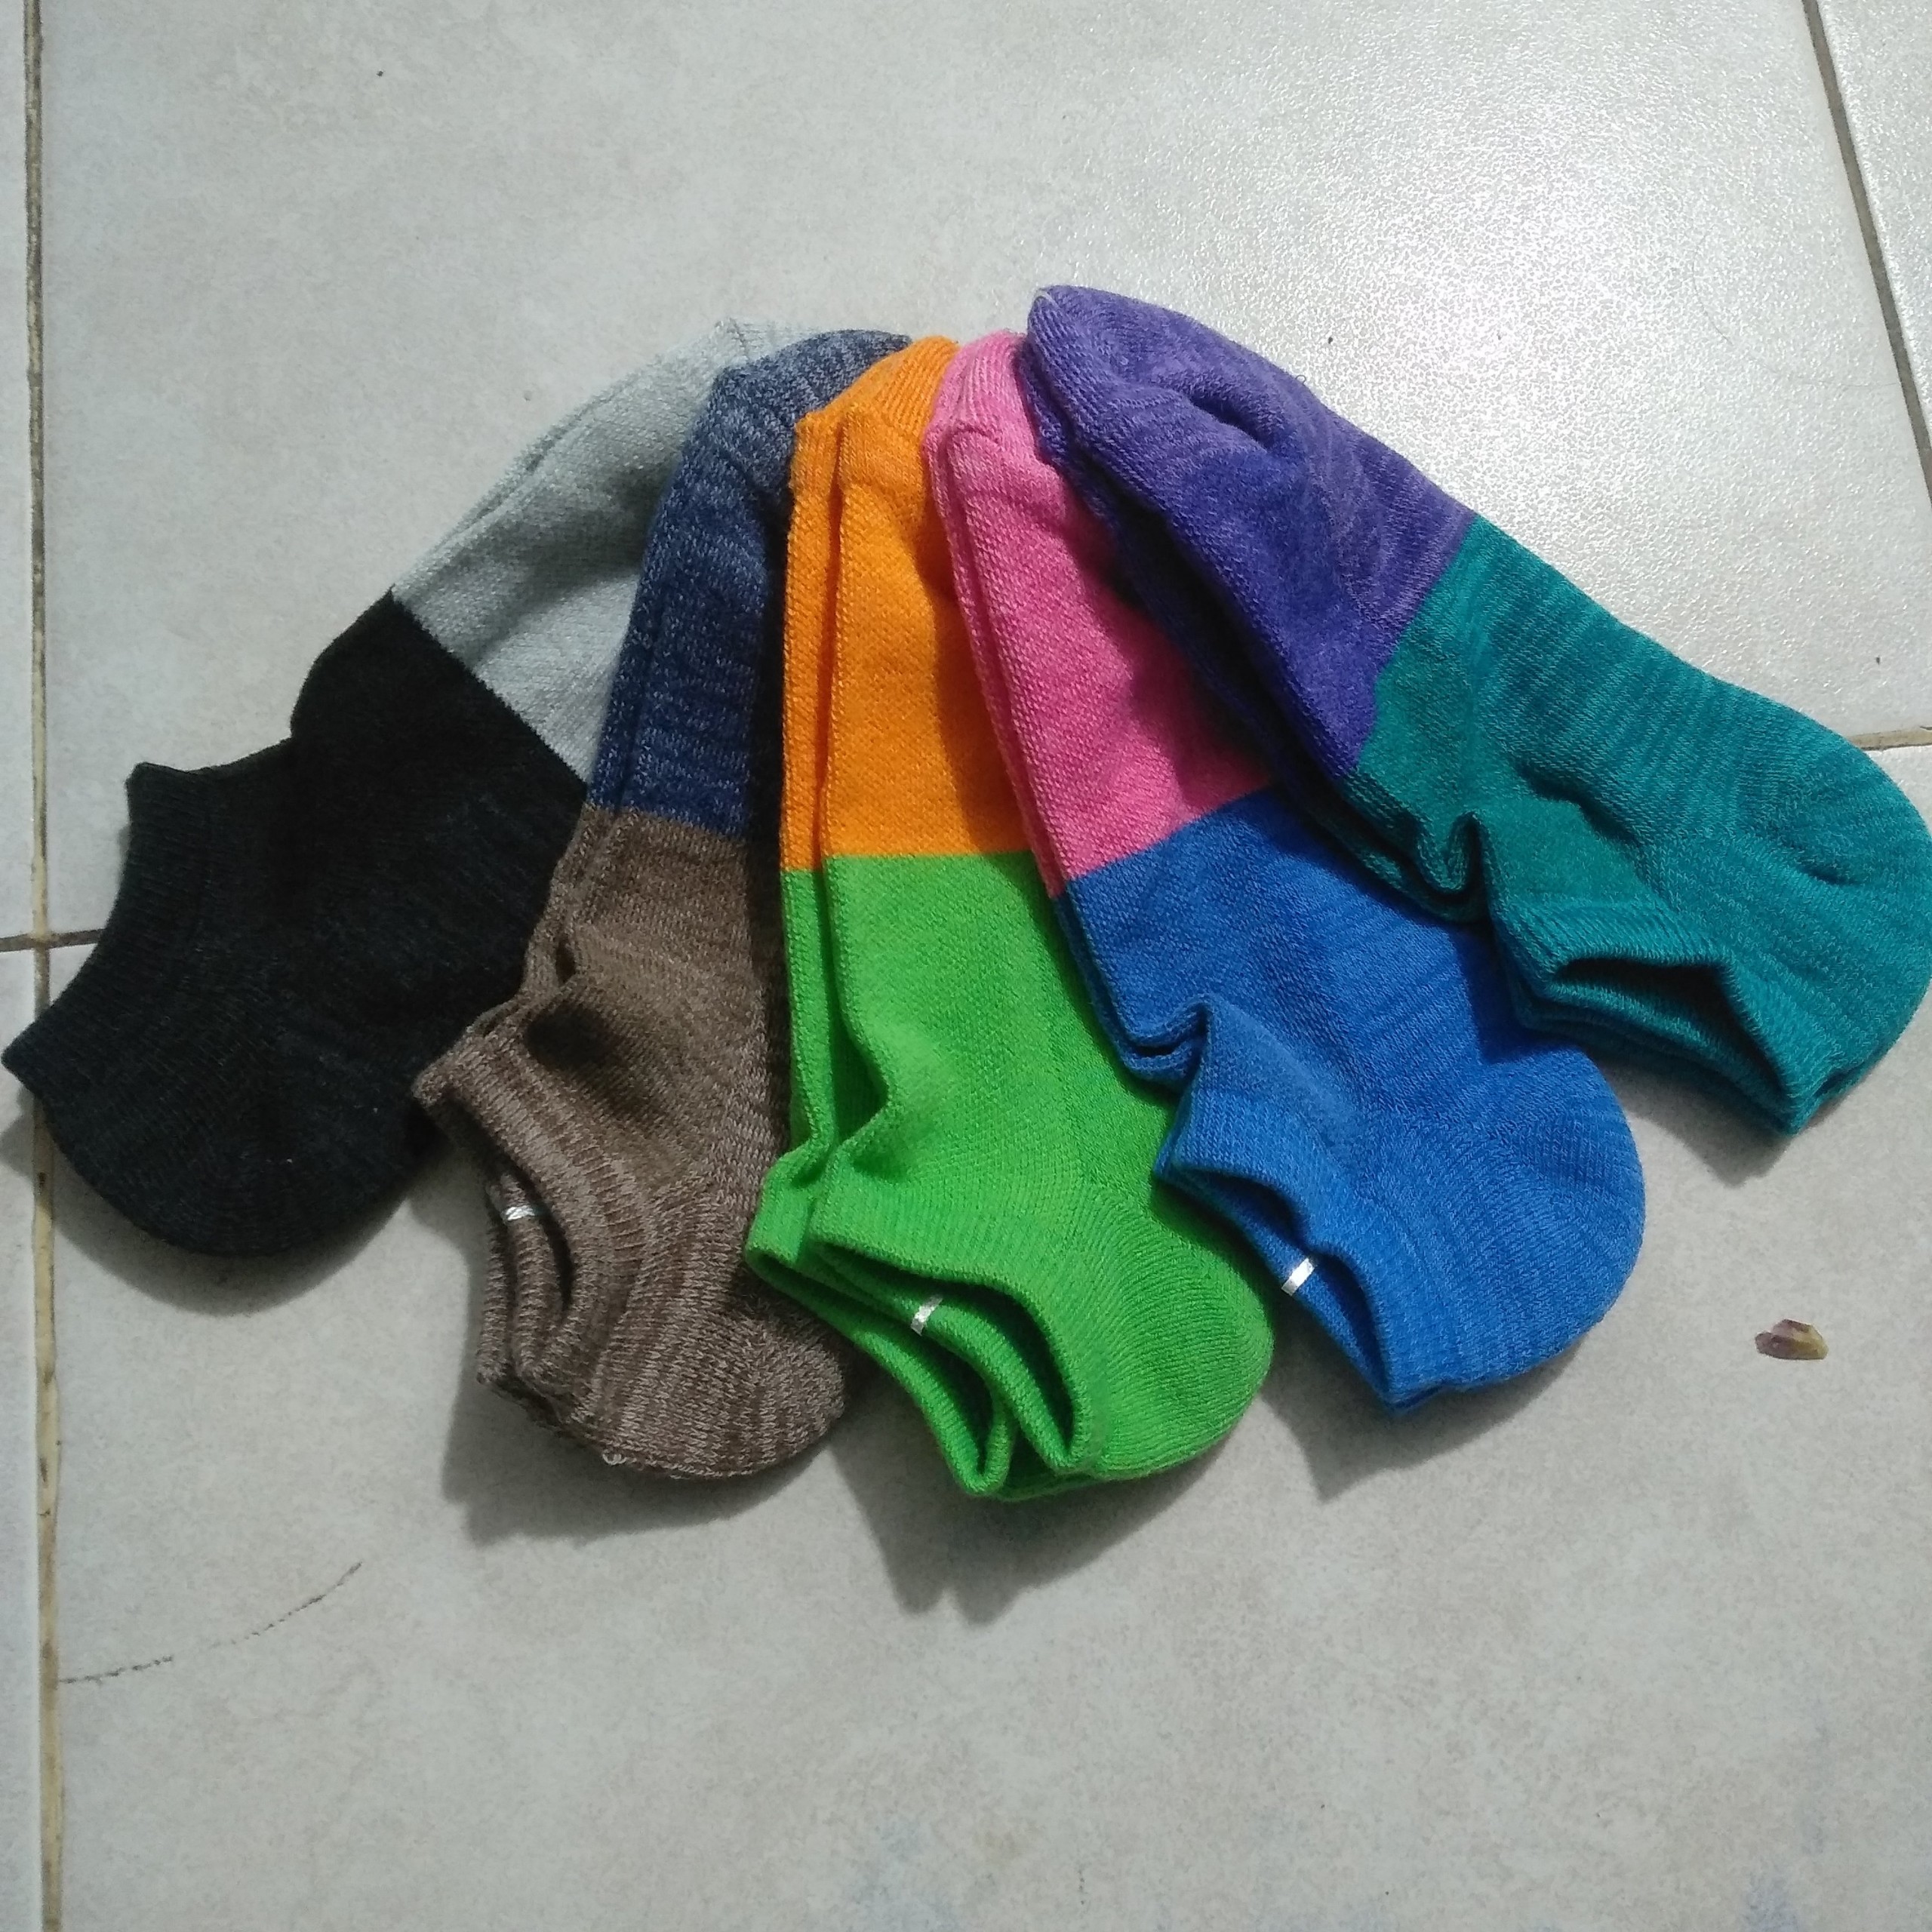 Uniqlo socks set 5